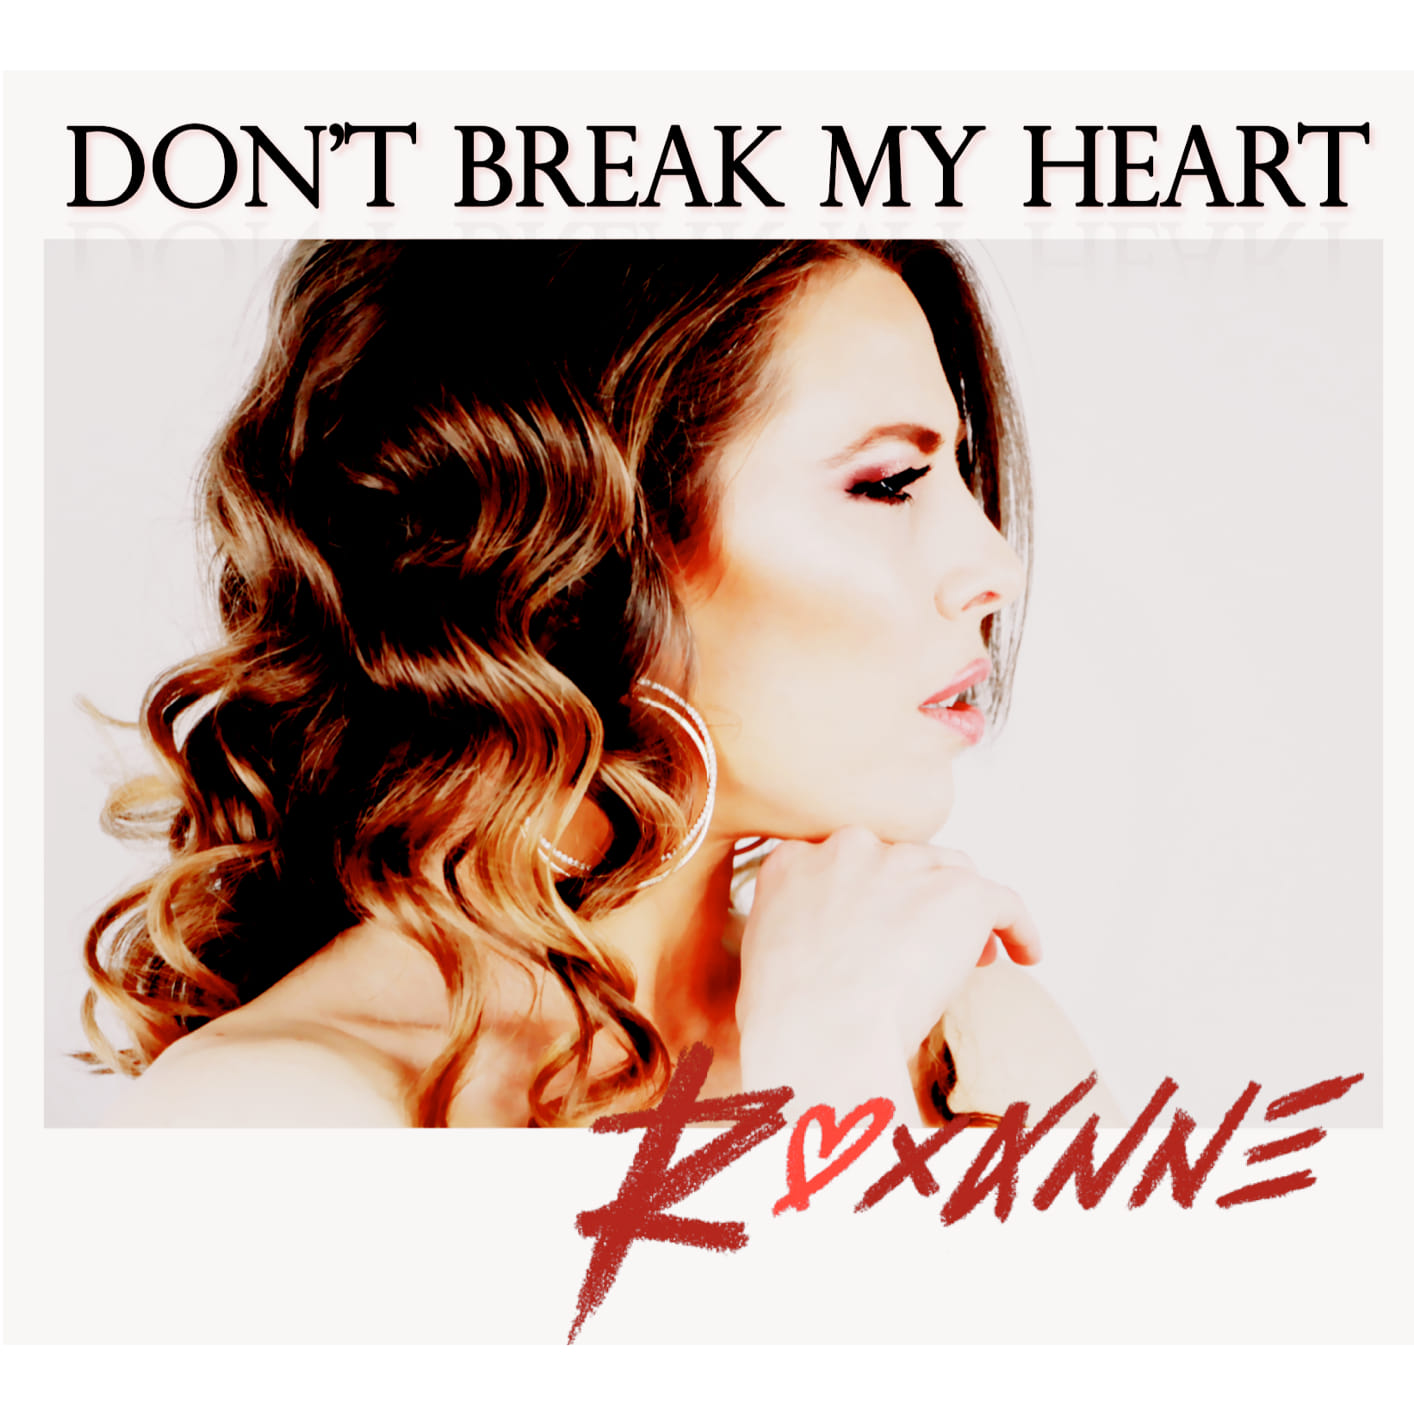 Art for Don't Break My Heart by Roxanne